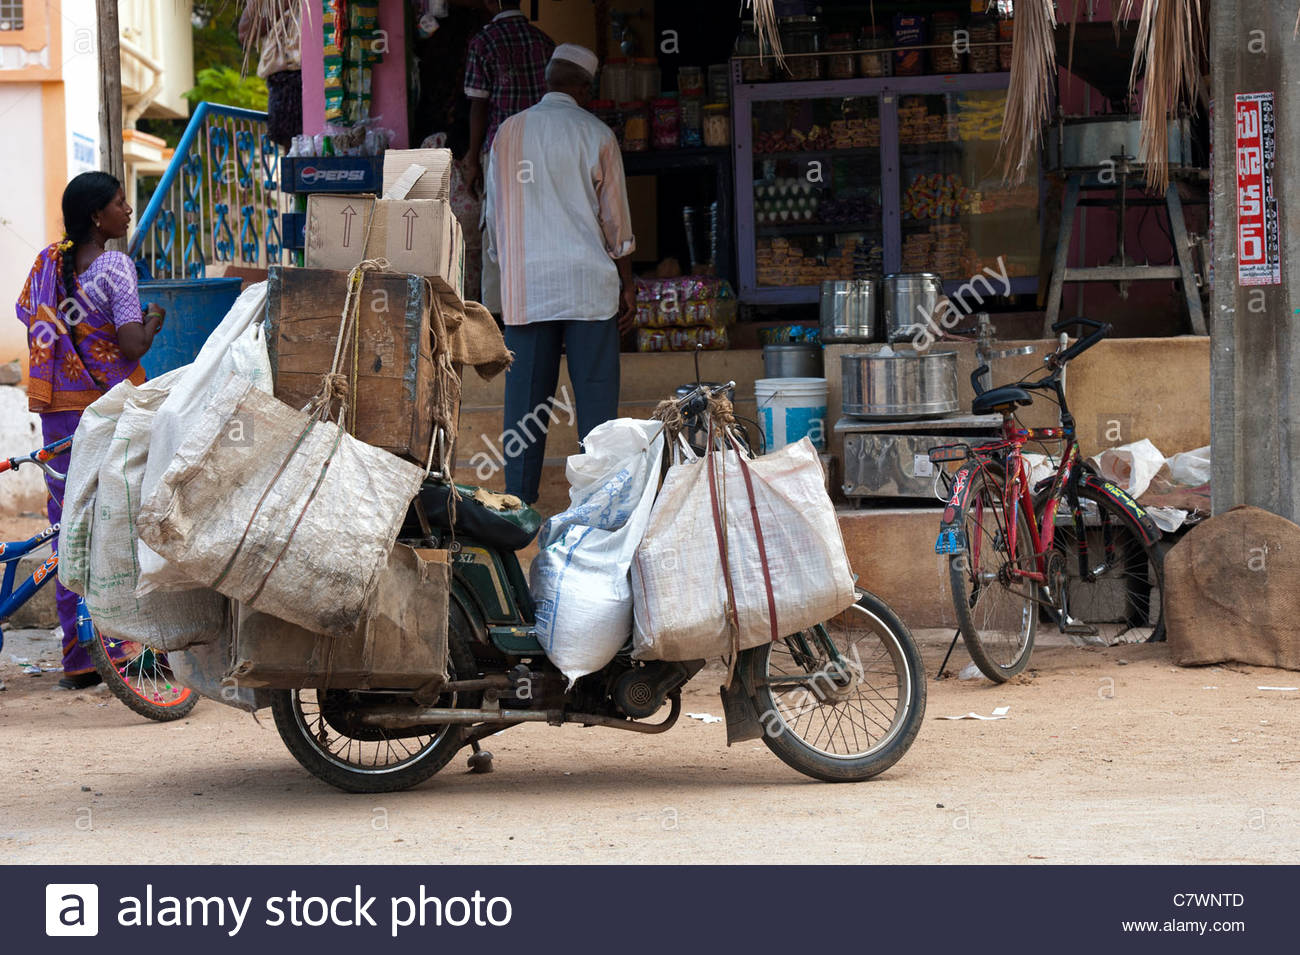 Ciclomotor ladened indio con mercancías para vender a las tiendas locales  en las calles de Puttaparthi